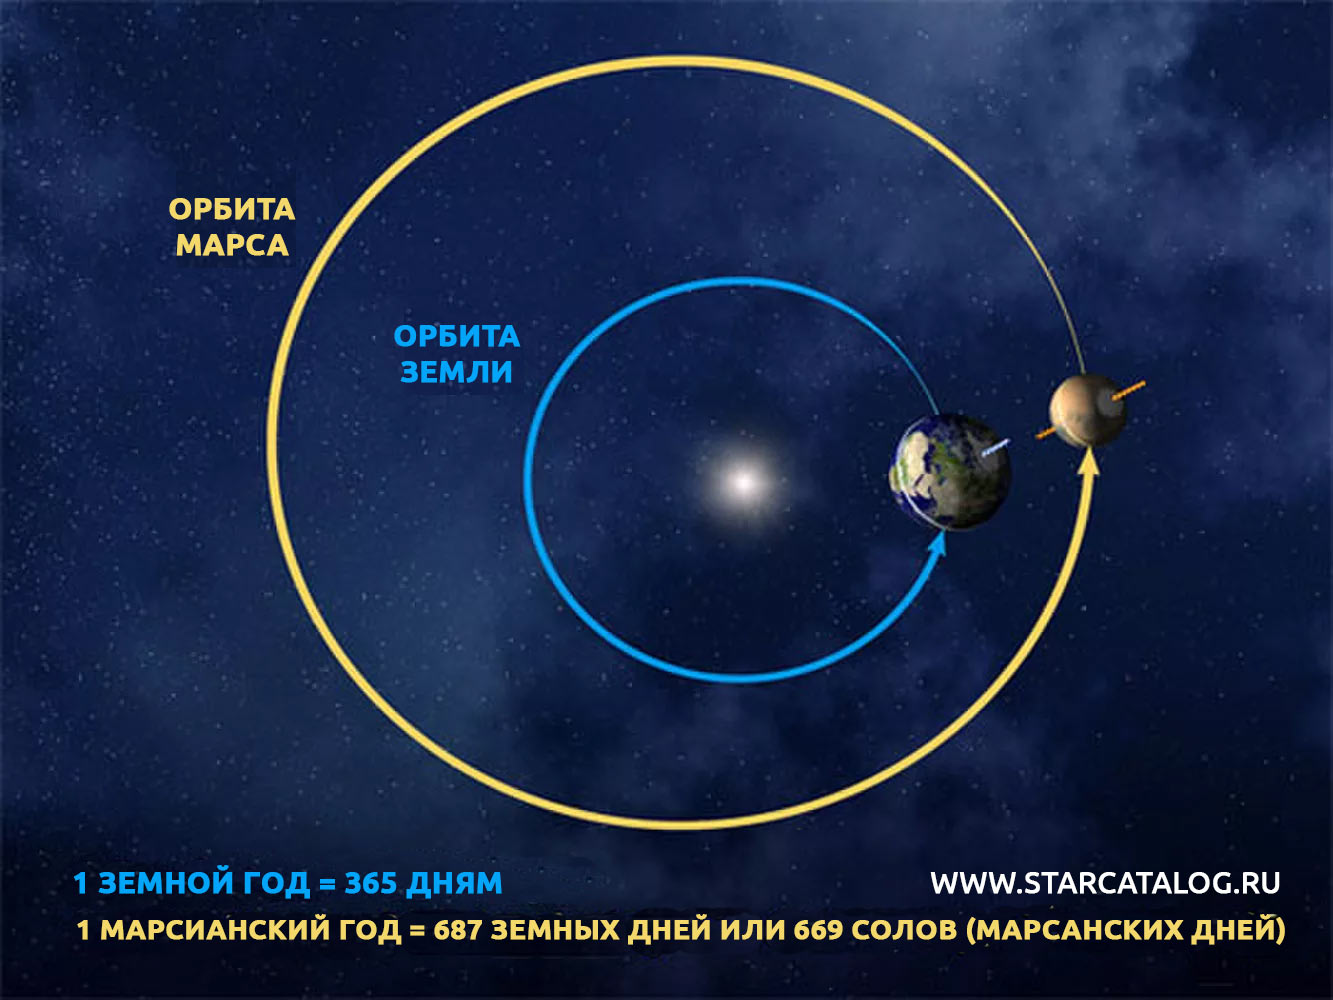 Орбиты Земли и Марса. Как хорошо видно из схемы, центр орбиты Марса значительно смещен, сама орбита совсем не похожа на идеальный круг